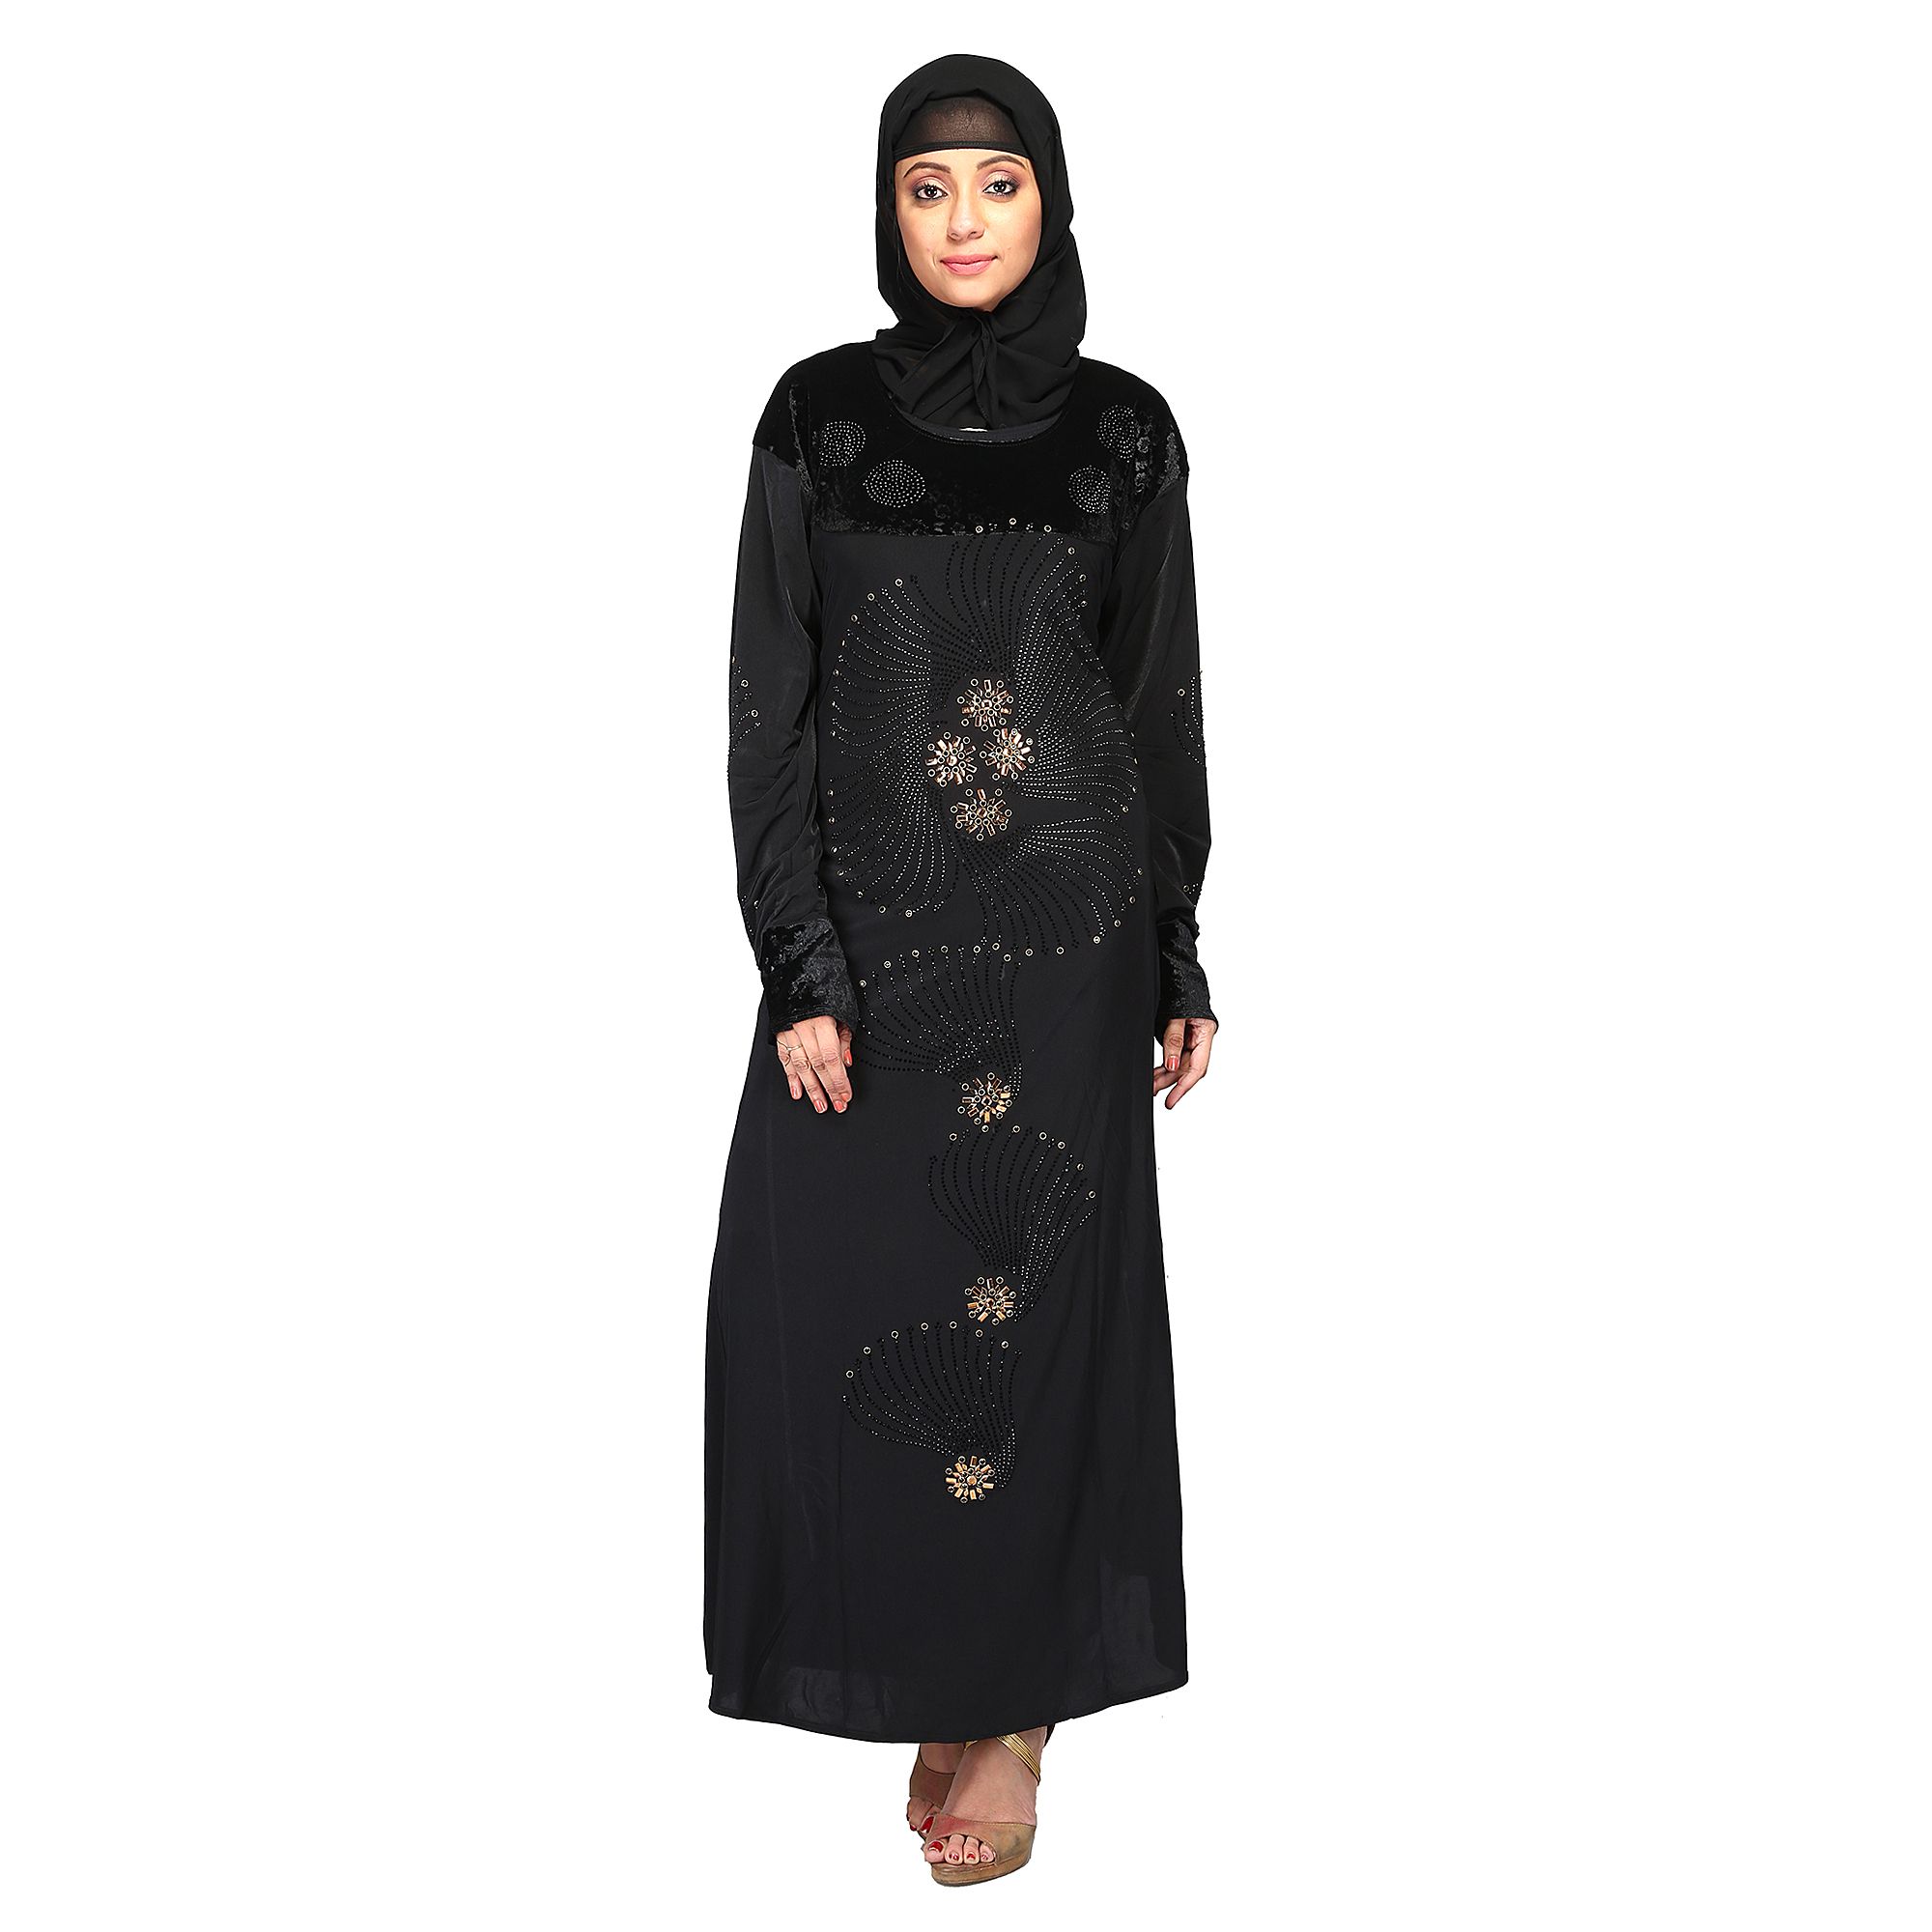 Hawai Black Rayon Stitched Burqas With Hijab Price In India Buy